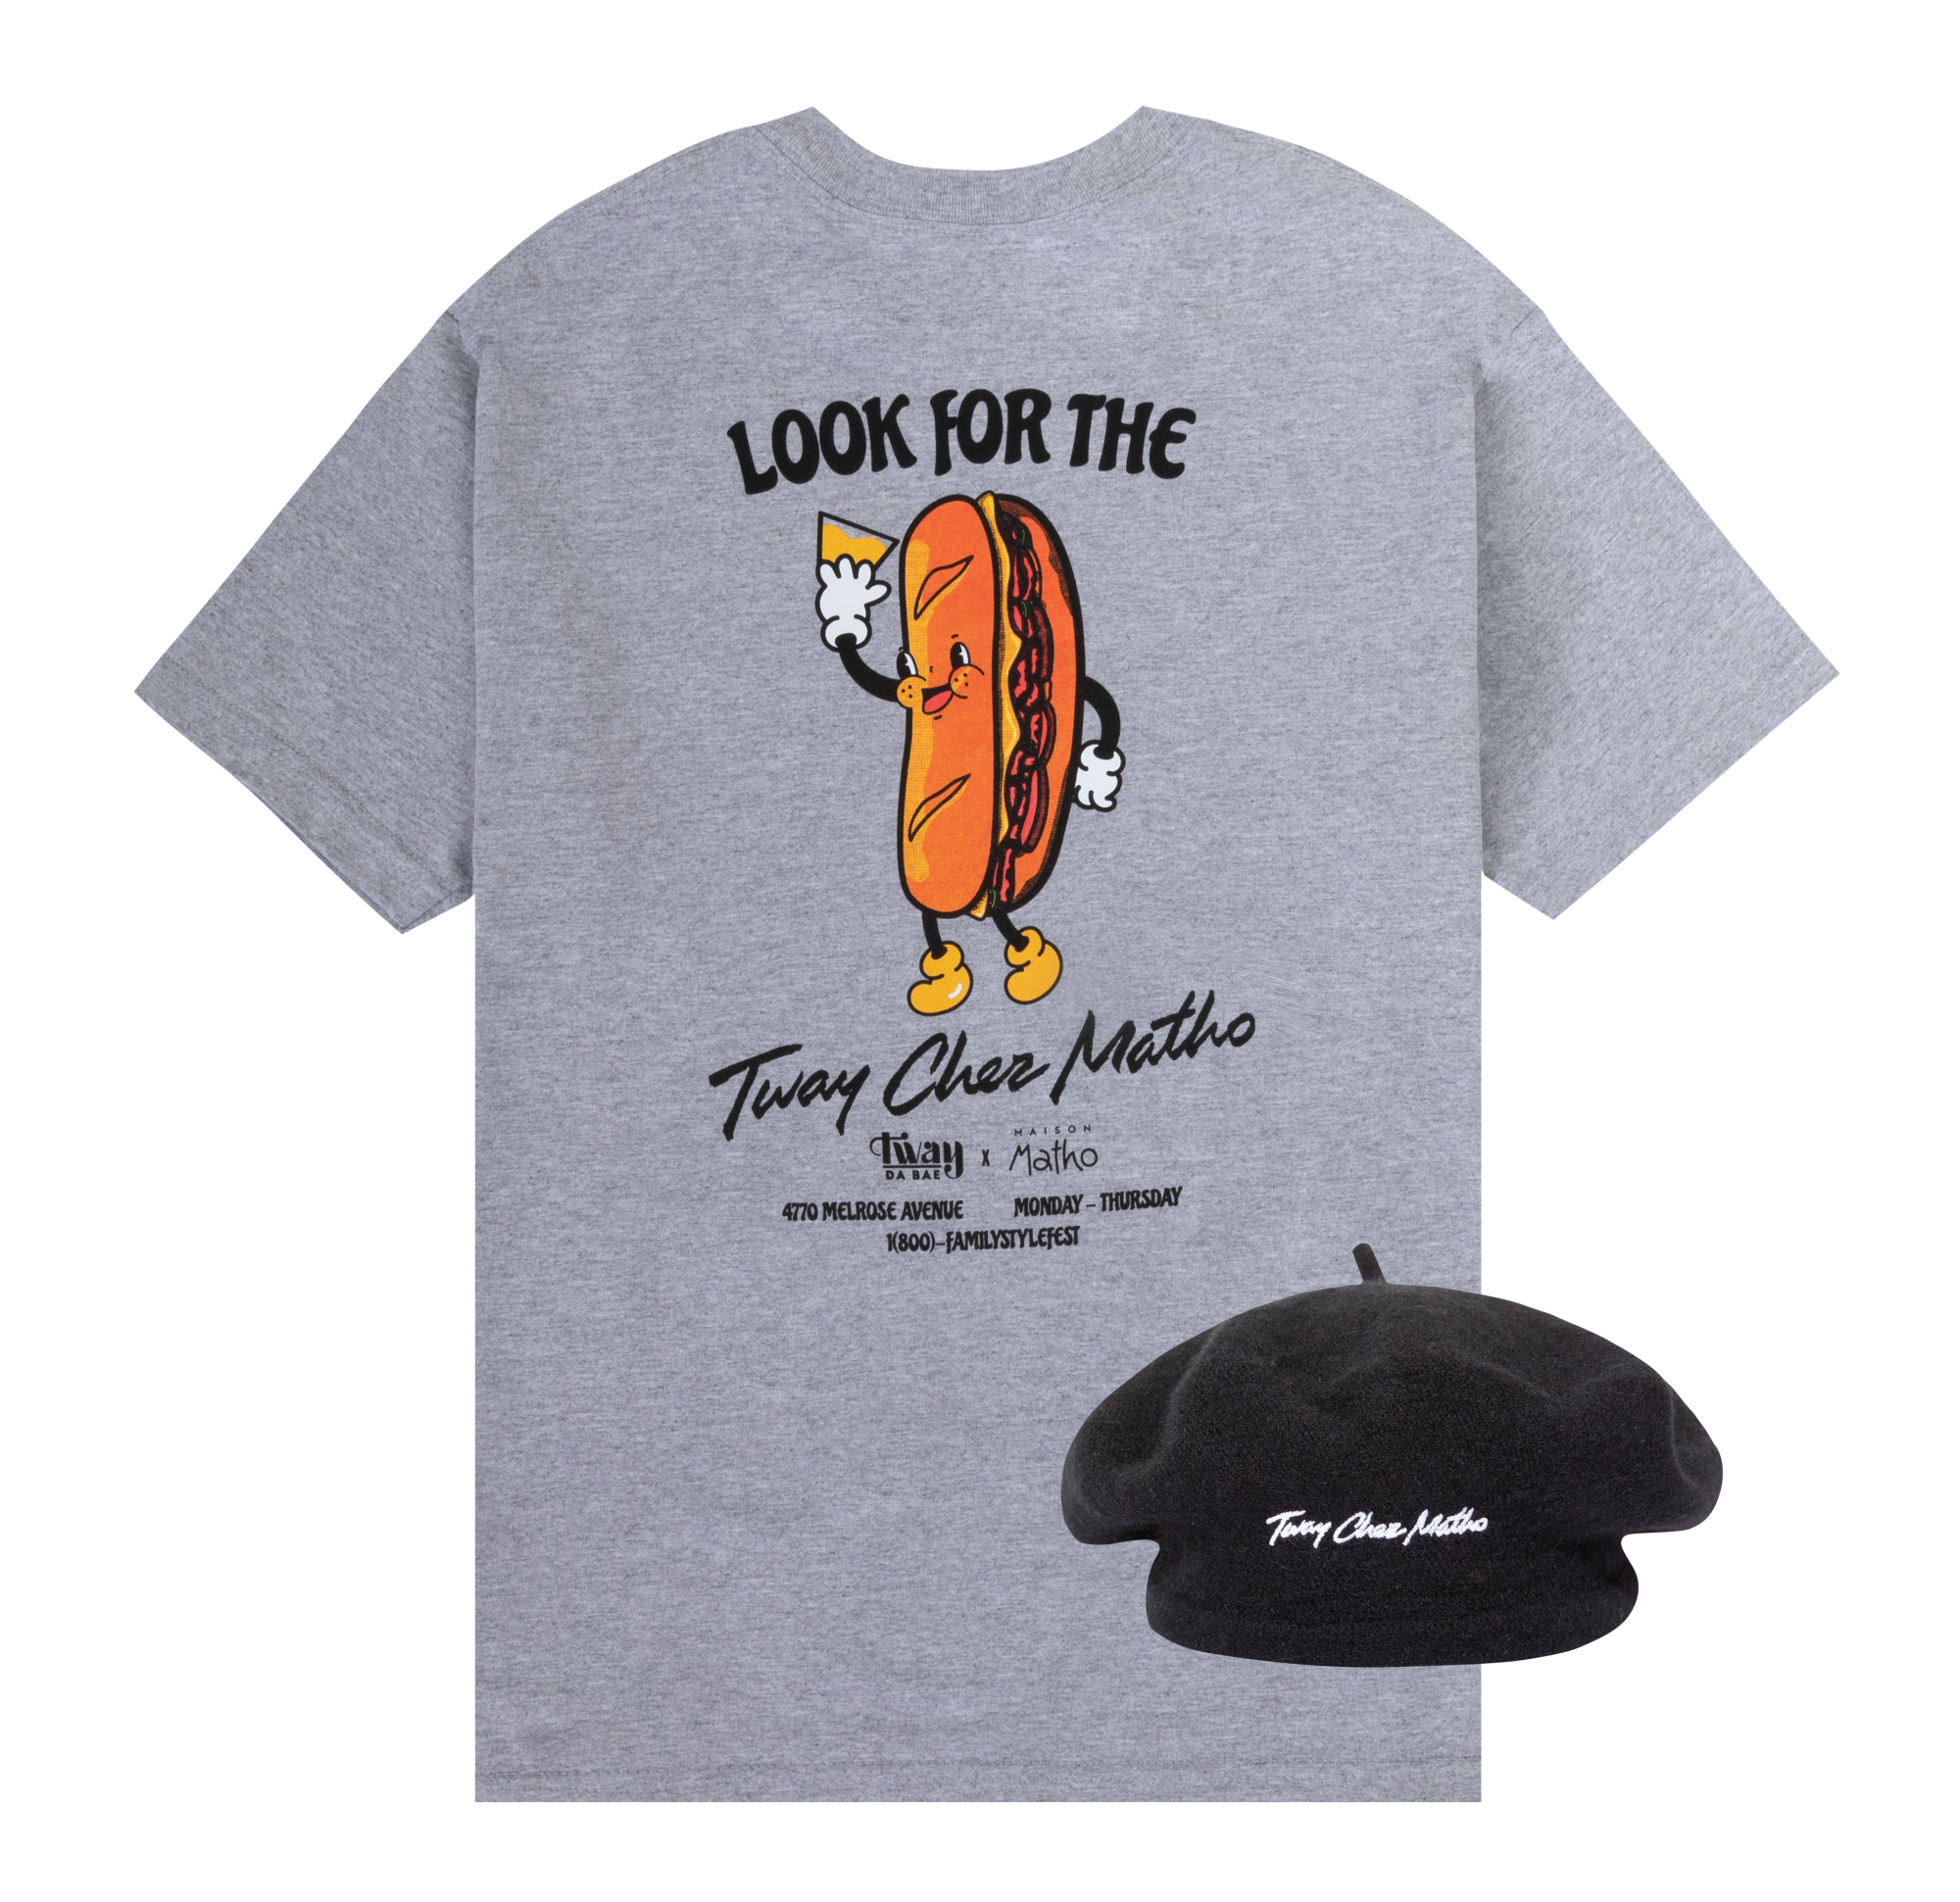 Hot dog t-shirt and black beret